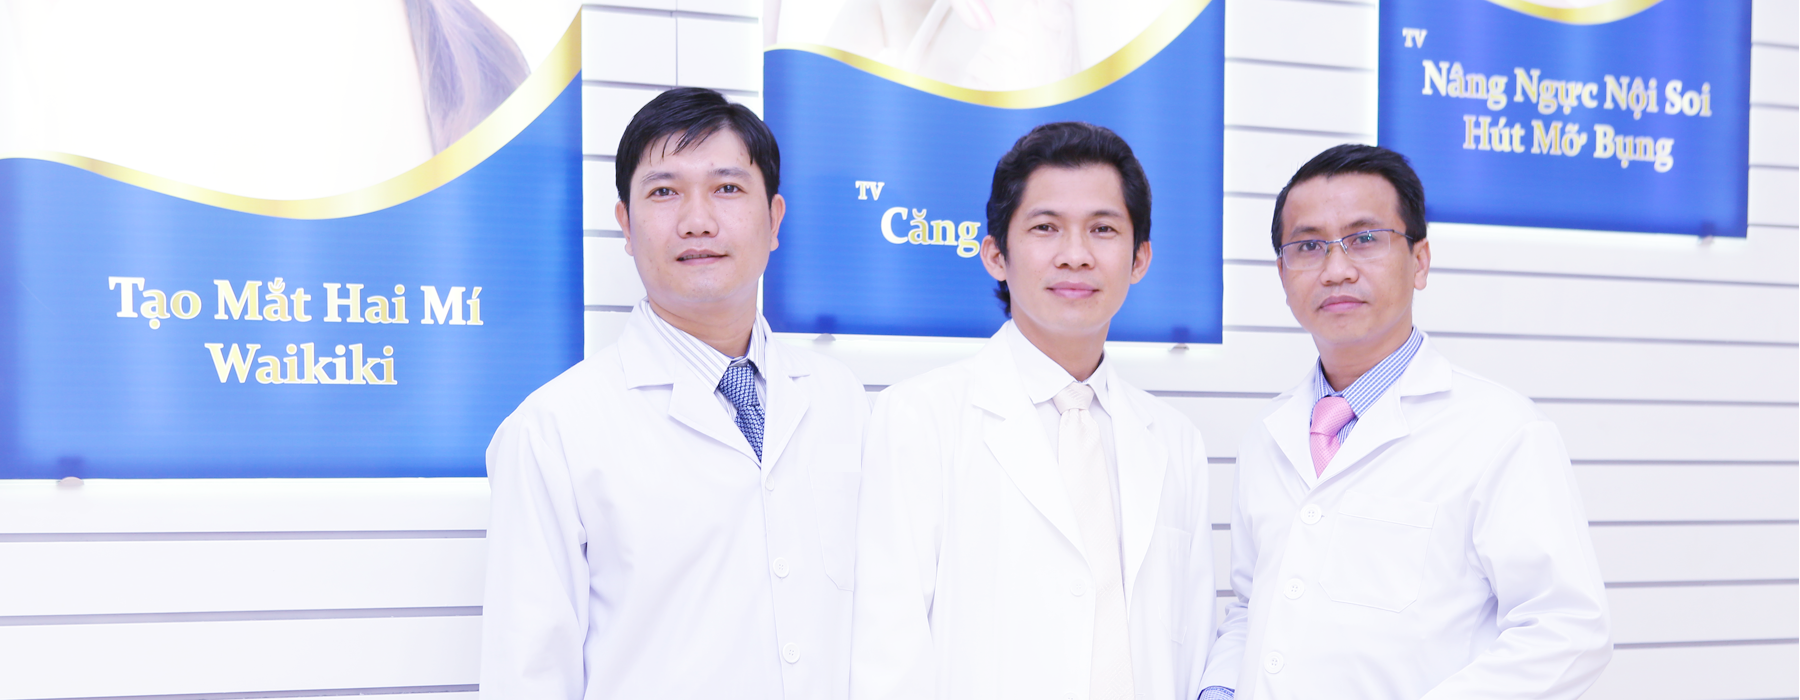 Quy trình nâng ngực nội soi- thẩm mỹ viện bác sĩ Nguyễn Thế Thạnh